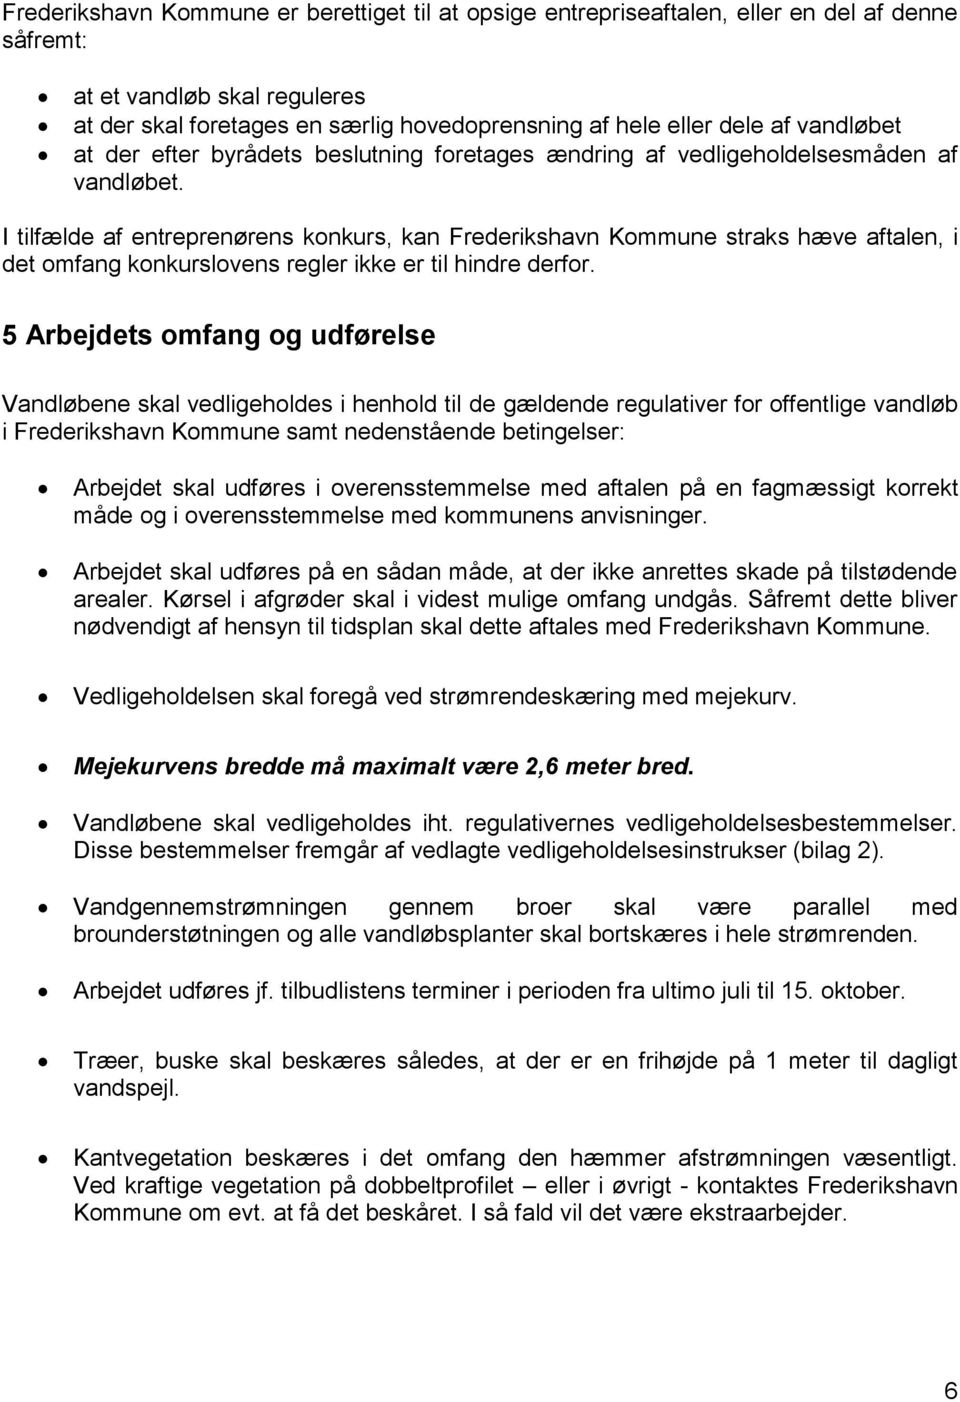 I tilfælde af entreprenørens konkurs, kan Frederikshavn Kommune straks hæve aftalen, i det omfang konkurslovens regler ikke er til hindre derfor.